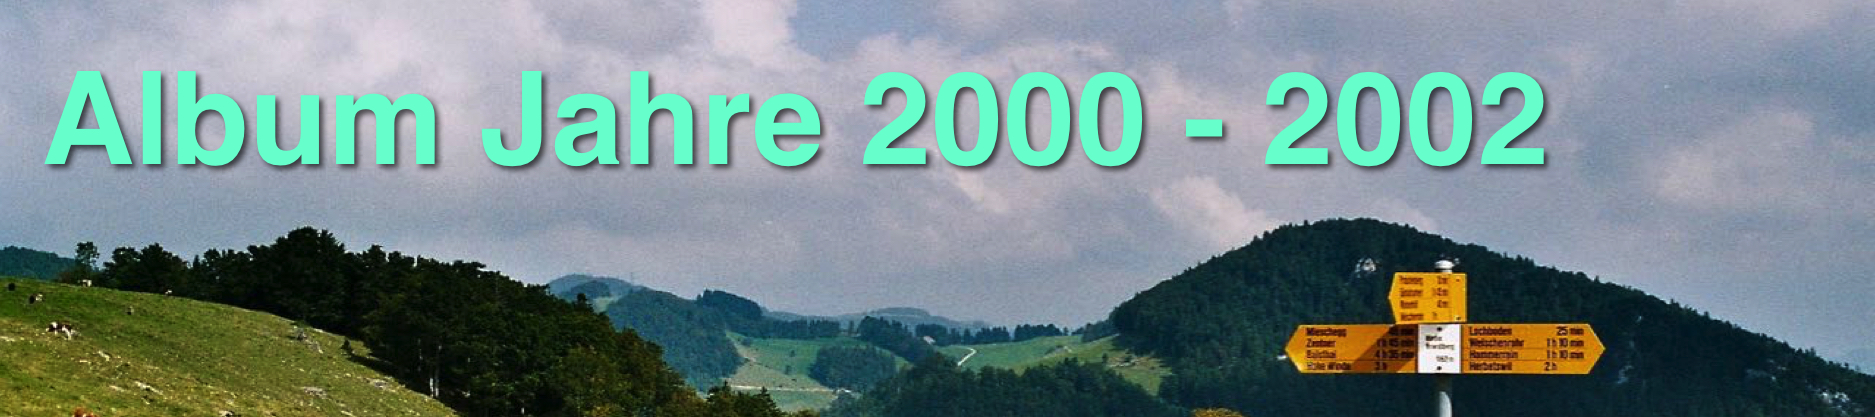 Pano-2000